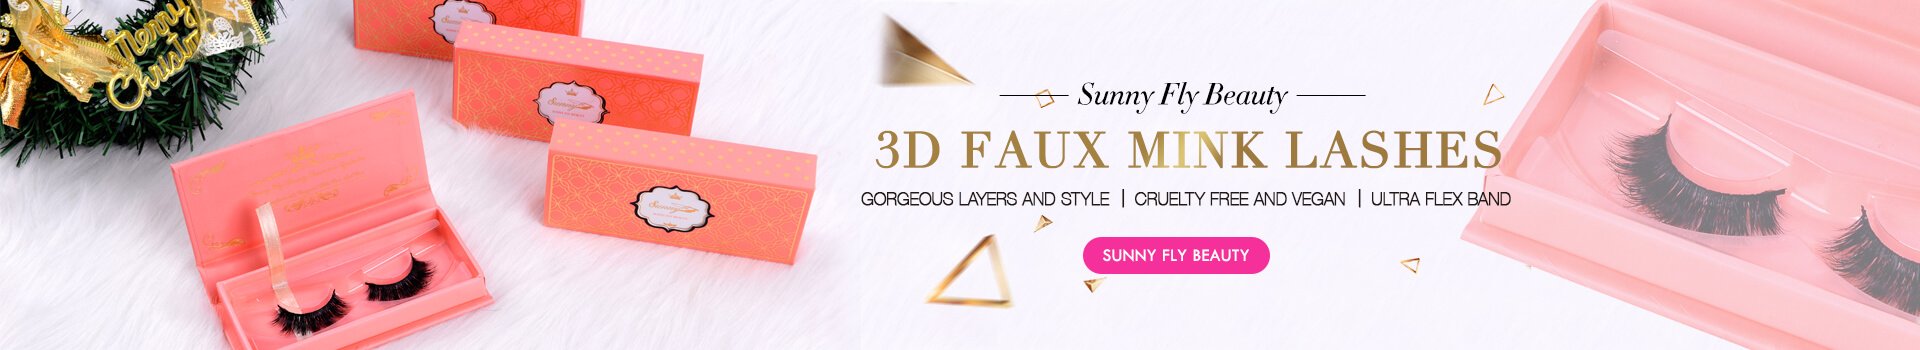 3D Faux Mink Lashes SD17